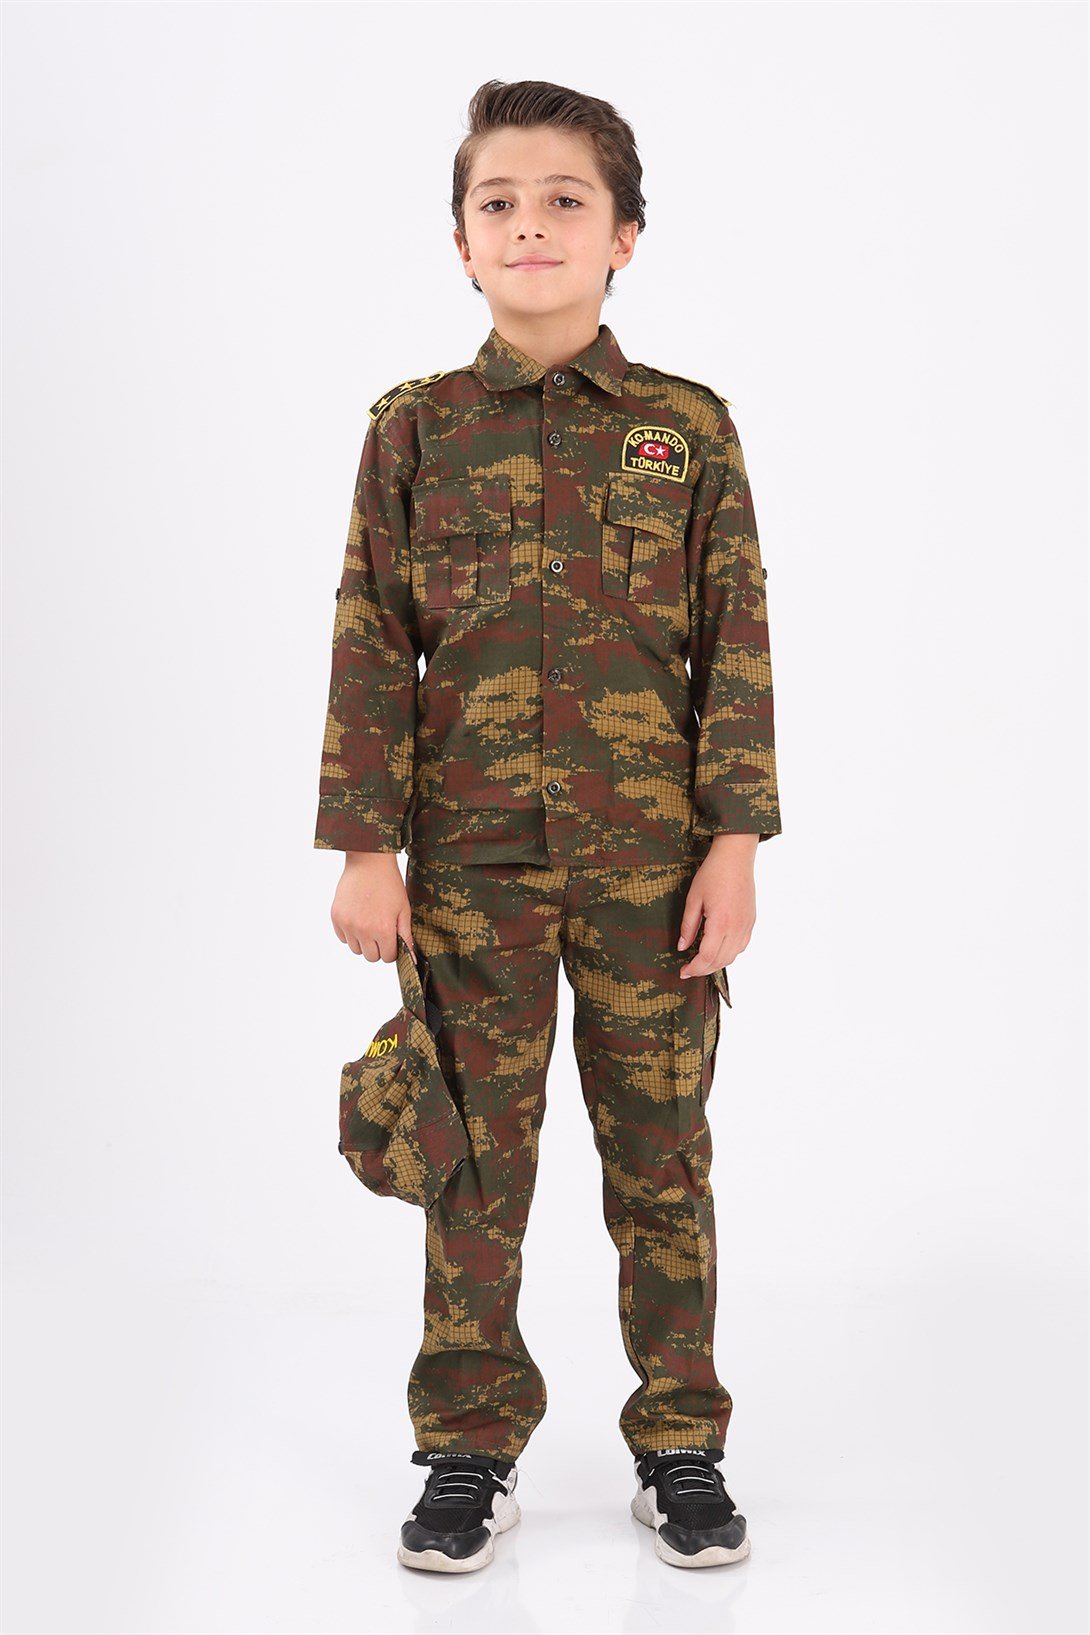 Türk Asker Kostümü - Asker Kostümleri - Çocuk Asker Kıyafetleri I Oulabi Mir